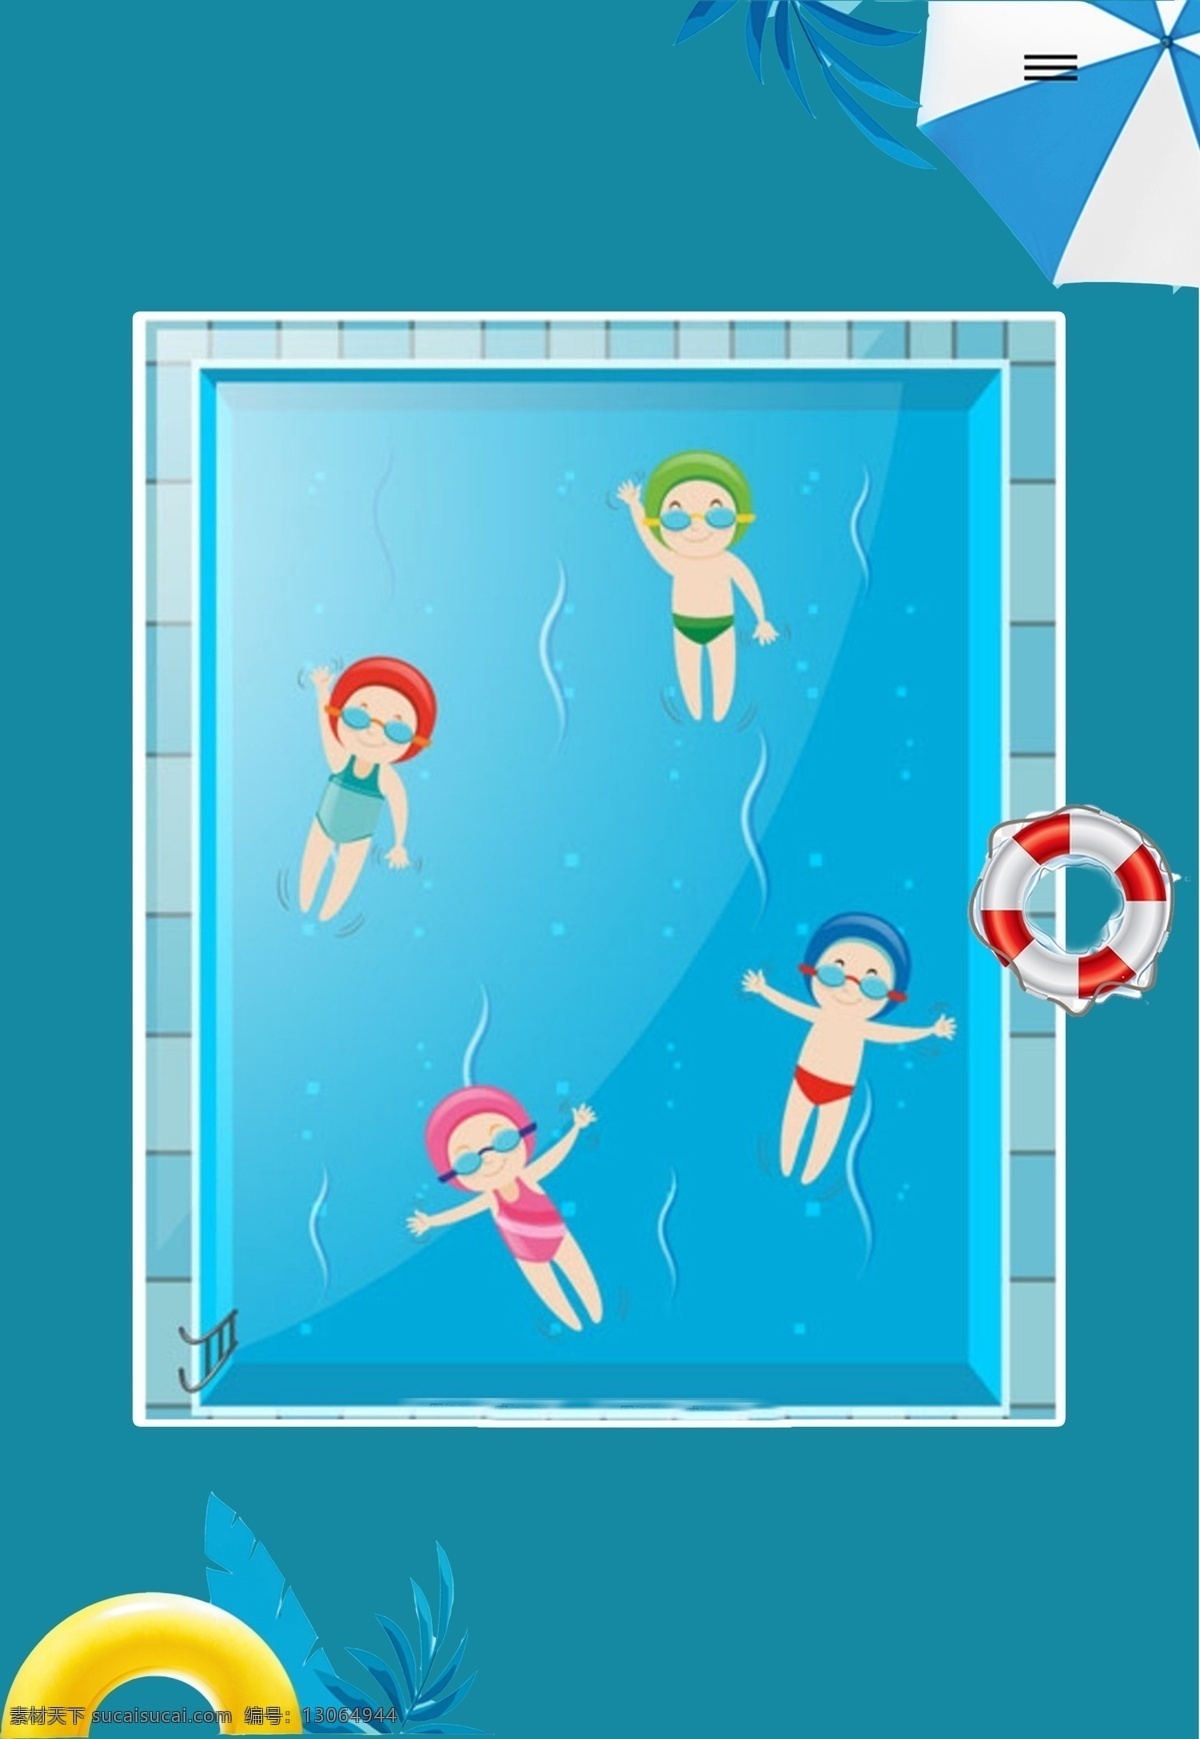 游泳 训练营 宣传海报 培训班 海报 宣传单 剪纸风海报 招生海报 背景 蓝色 暑假游泳招生